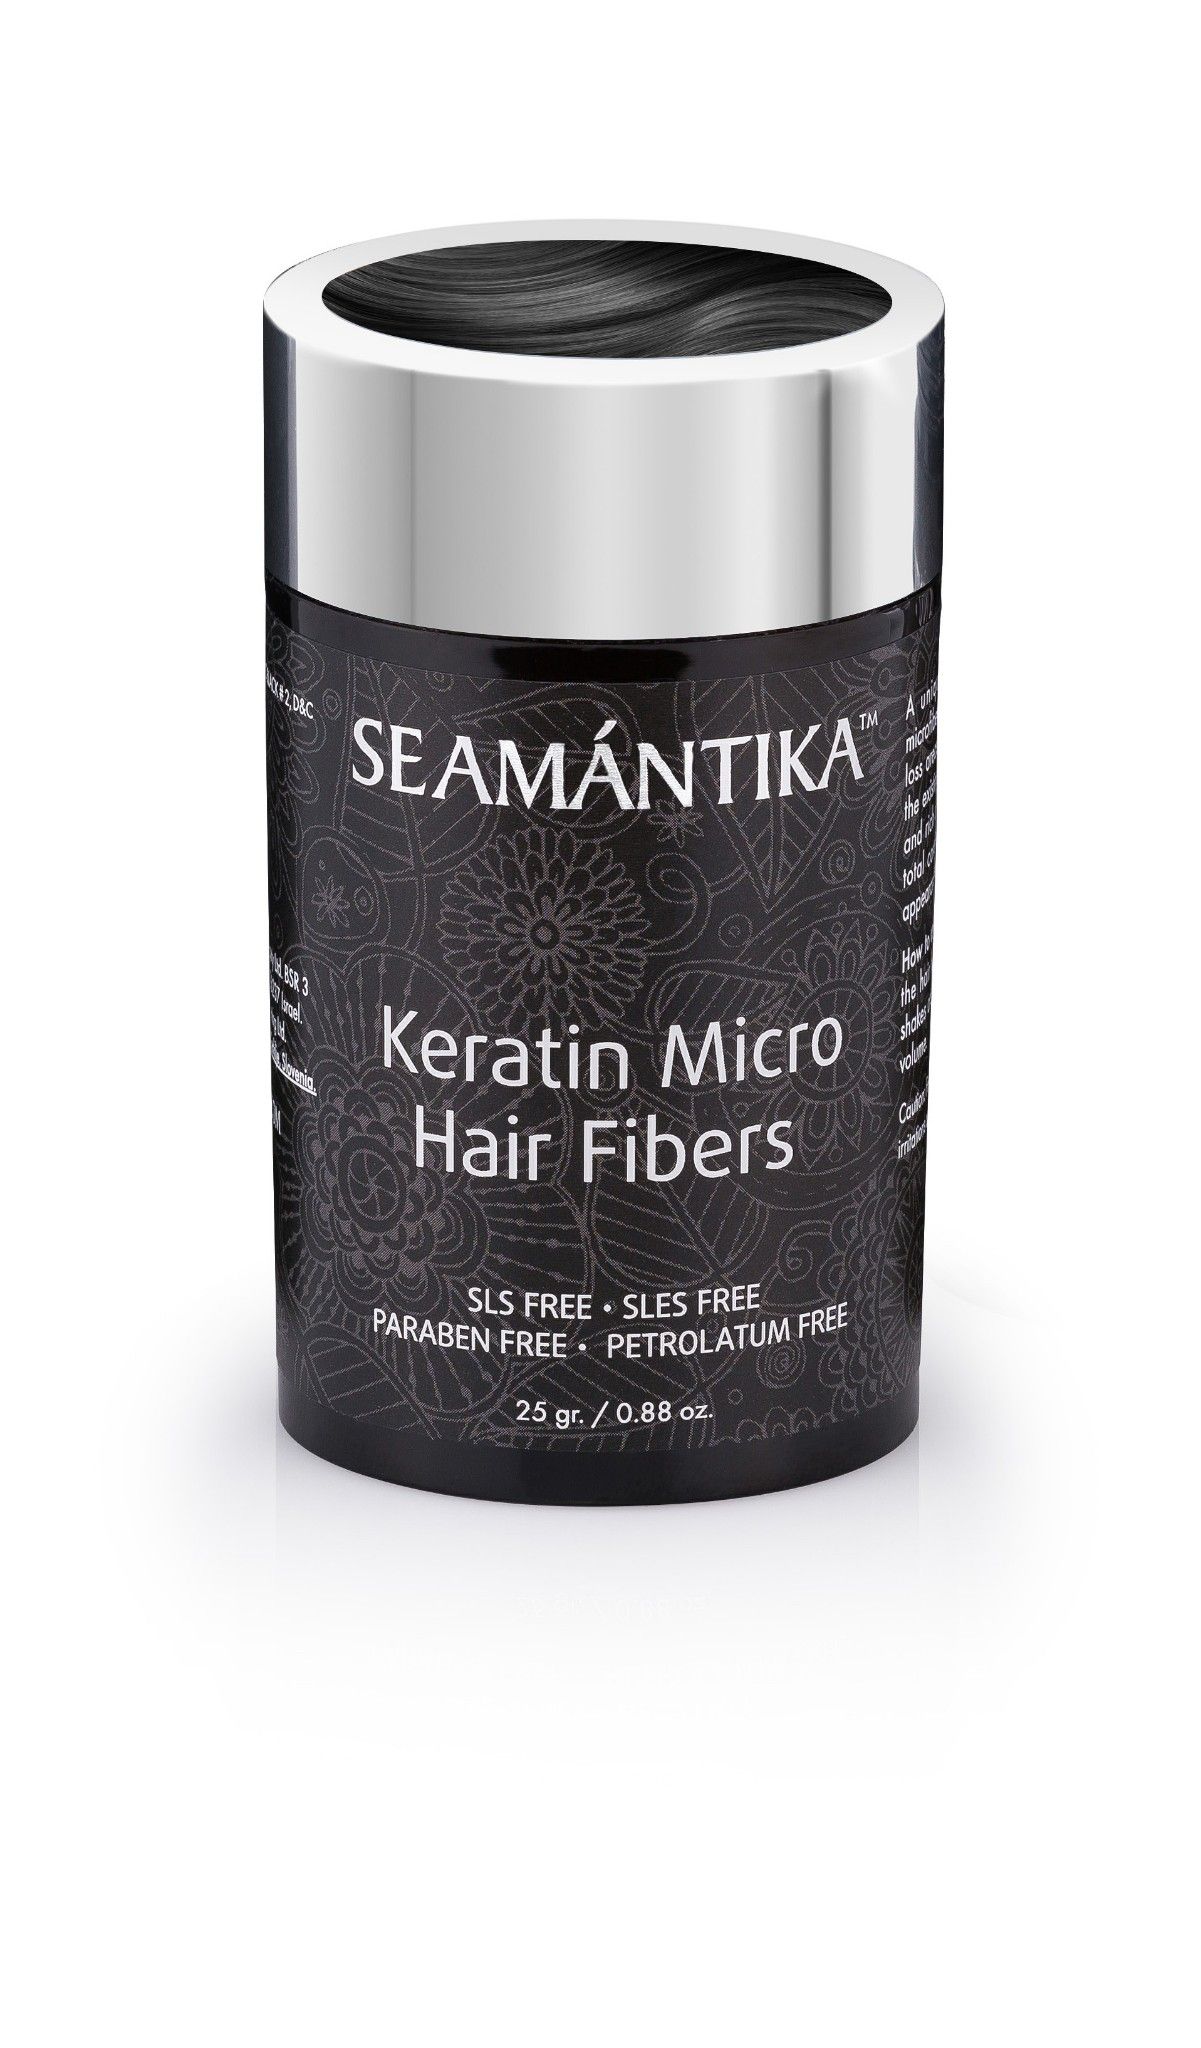  Sợi Keratin Siêu Nhỏ - Tóc Xám Đậm - Dành cho mái tóc mỏng - KERATIN MICRO HAIR FIBERS - DARK GRAY 